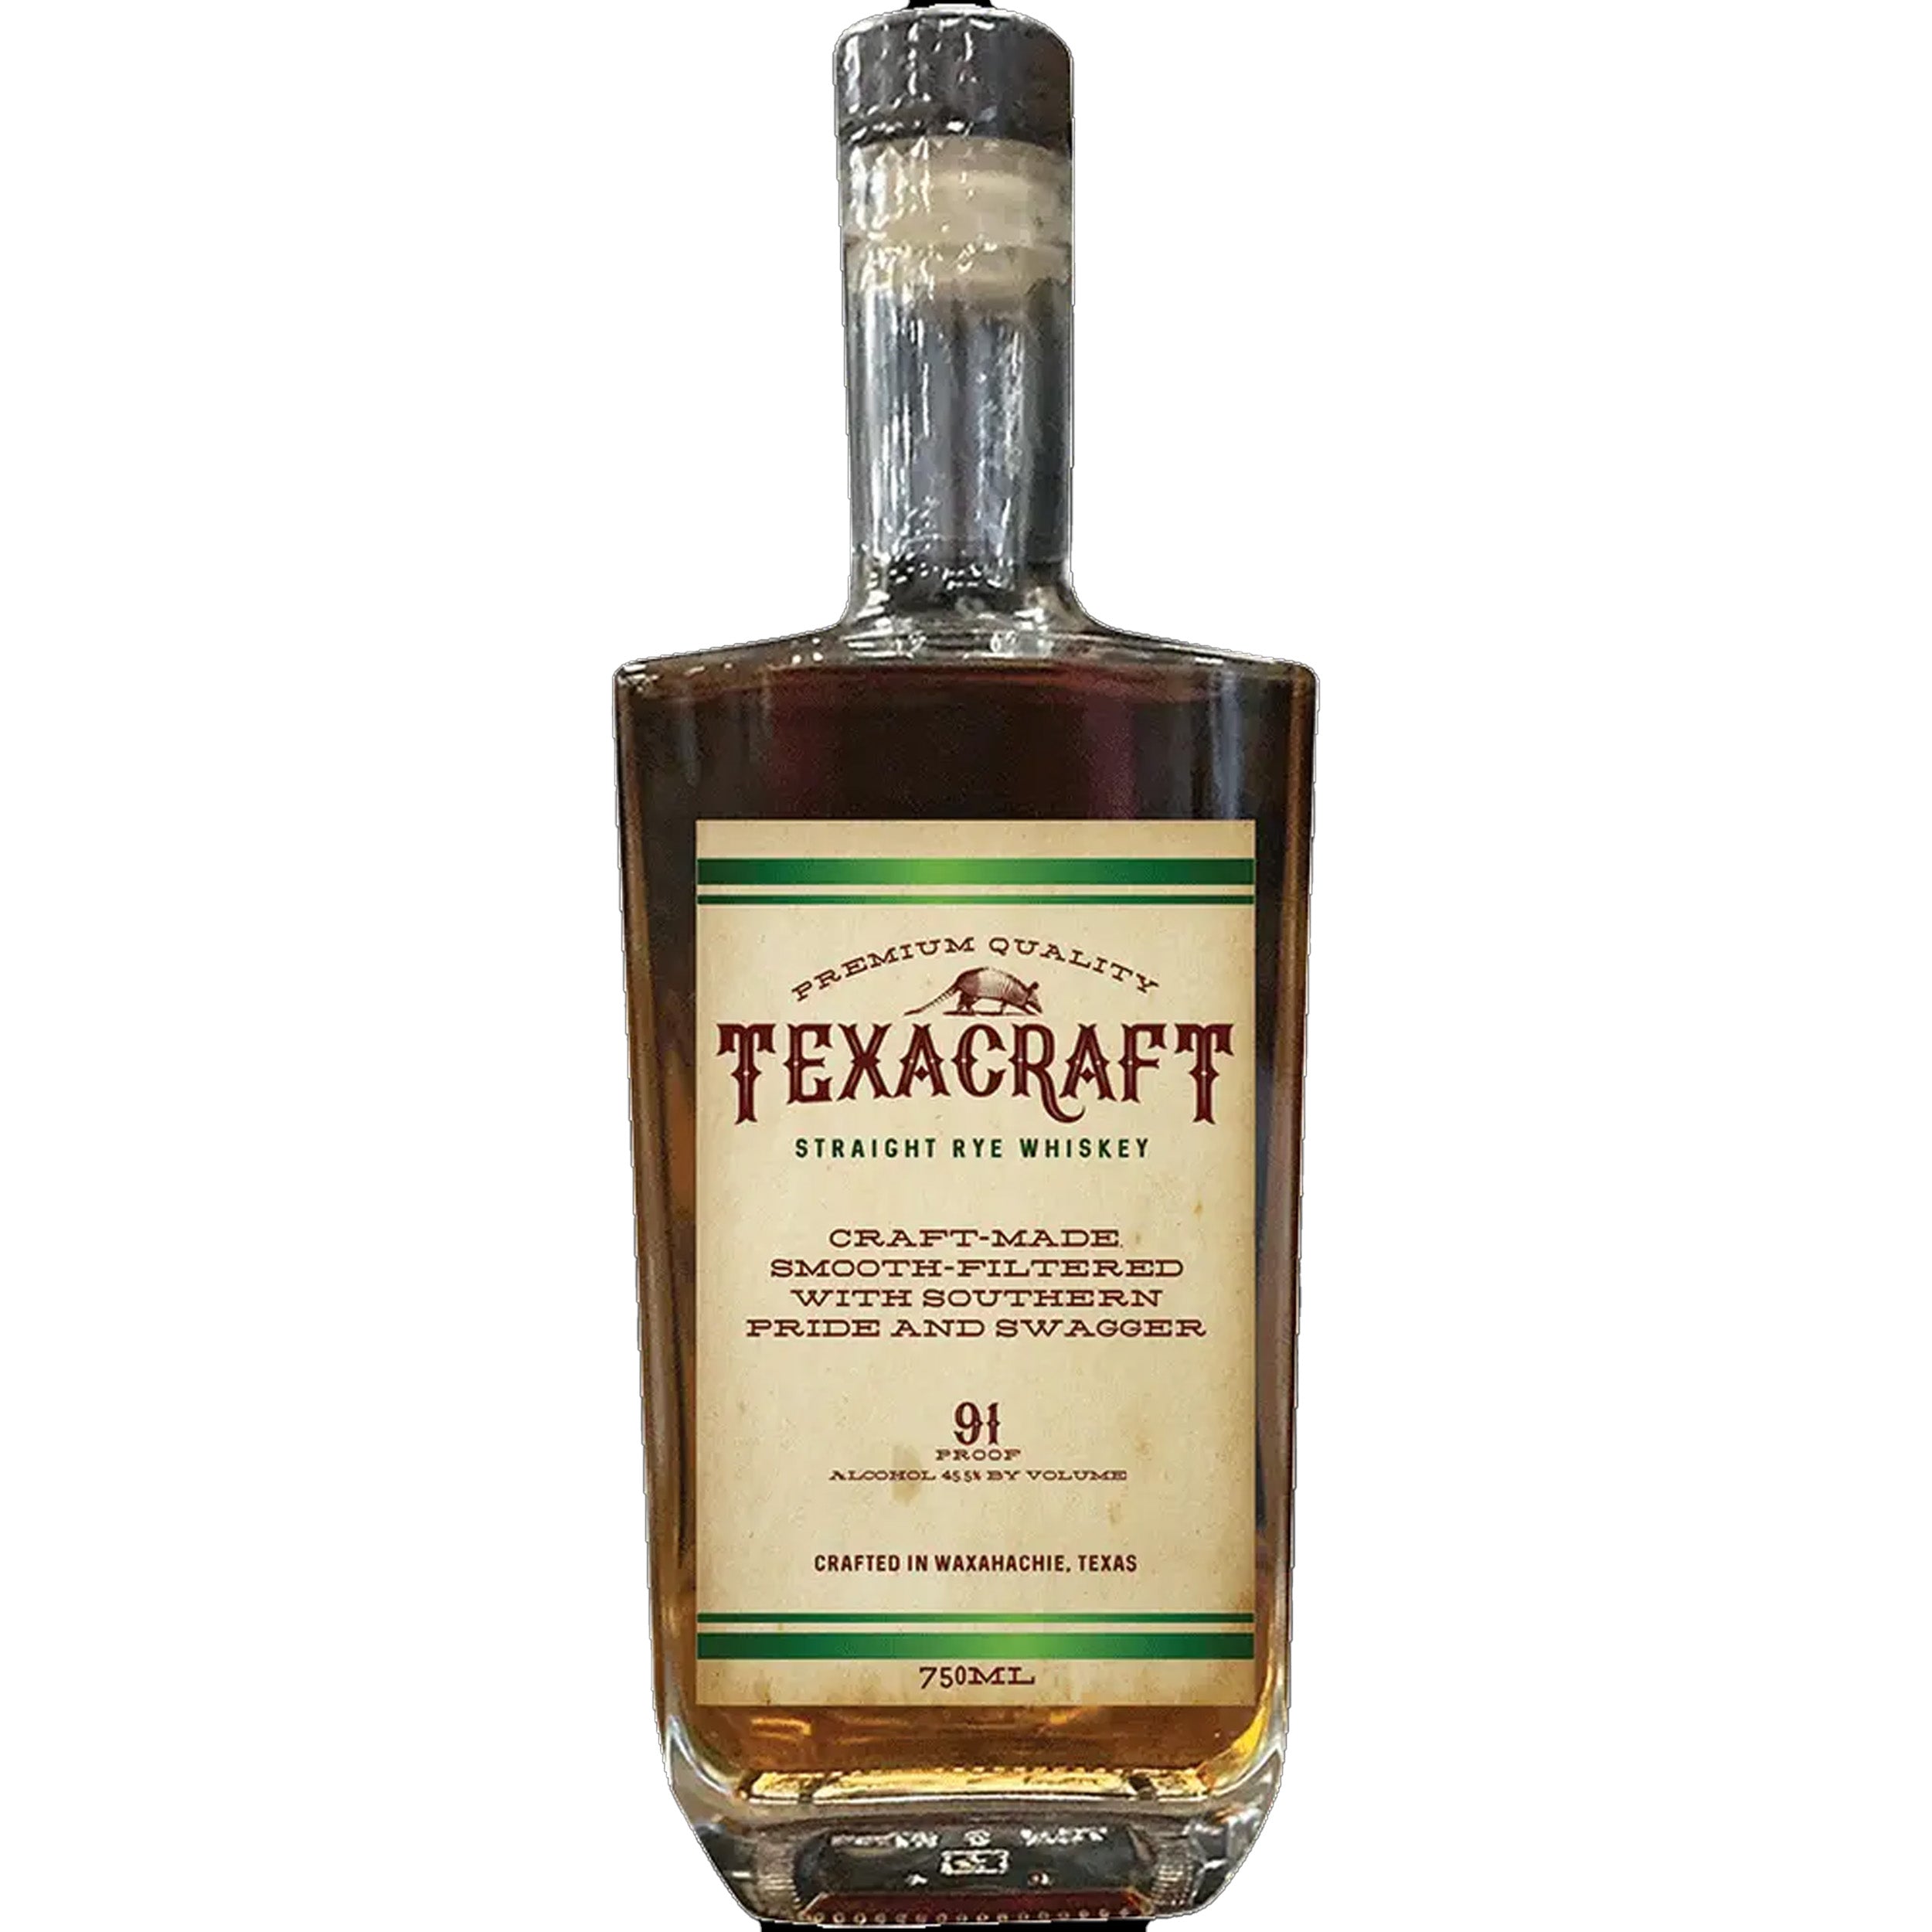 Texacraft Straight Rye Whiskey